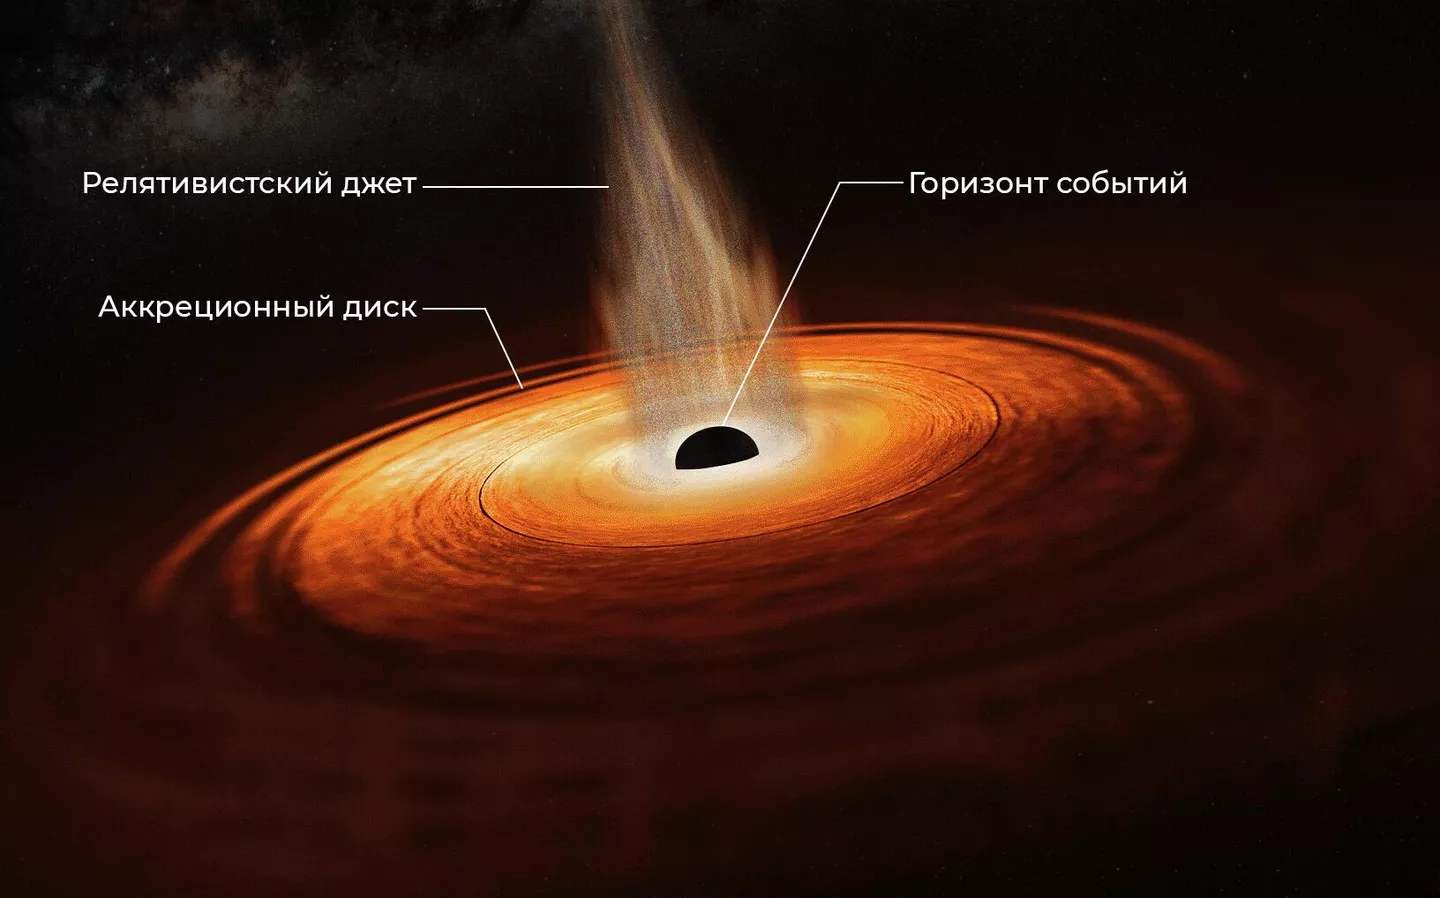 Черные дыры могут образовываться в центрах галактик